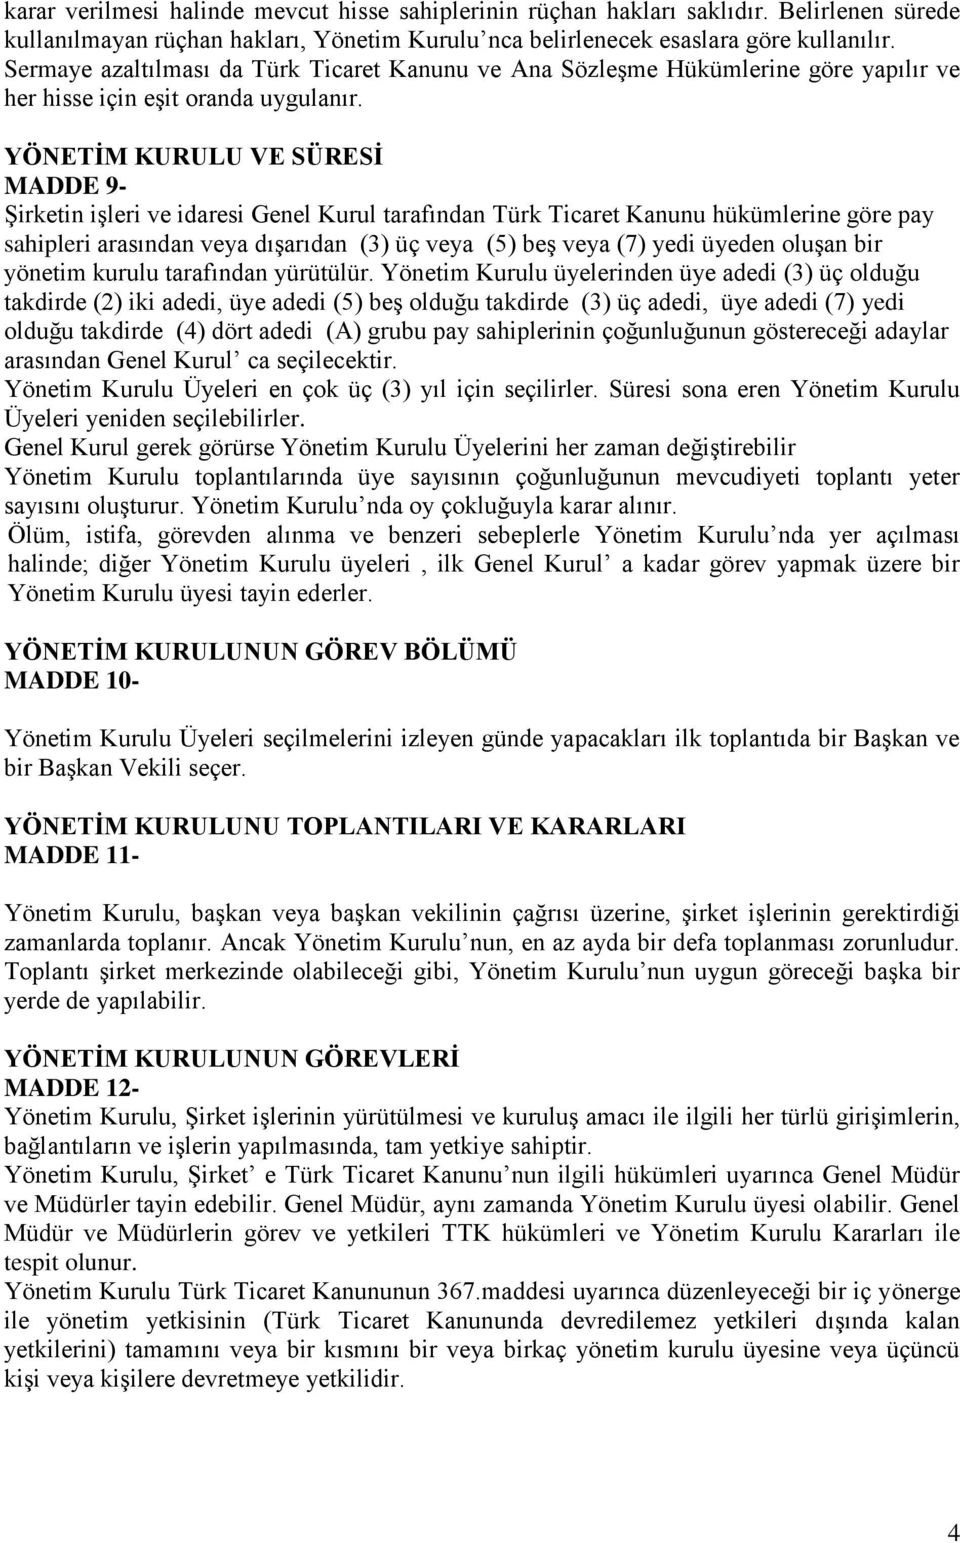 YÖNETİM KURULU VE SÜRESİ MADDE 9- Şirketin işleri ve idaresi Genel Kurul tarafından Türk Ticaret Kanunu hükümlerine göre pay sahipleri arasından veya dışarıdan (3) üç veya (5) beş veya (7) yedi